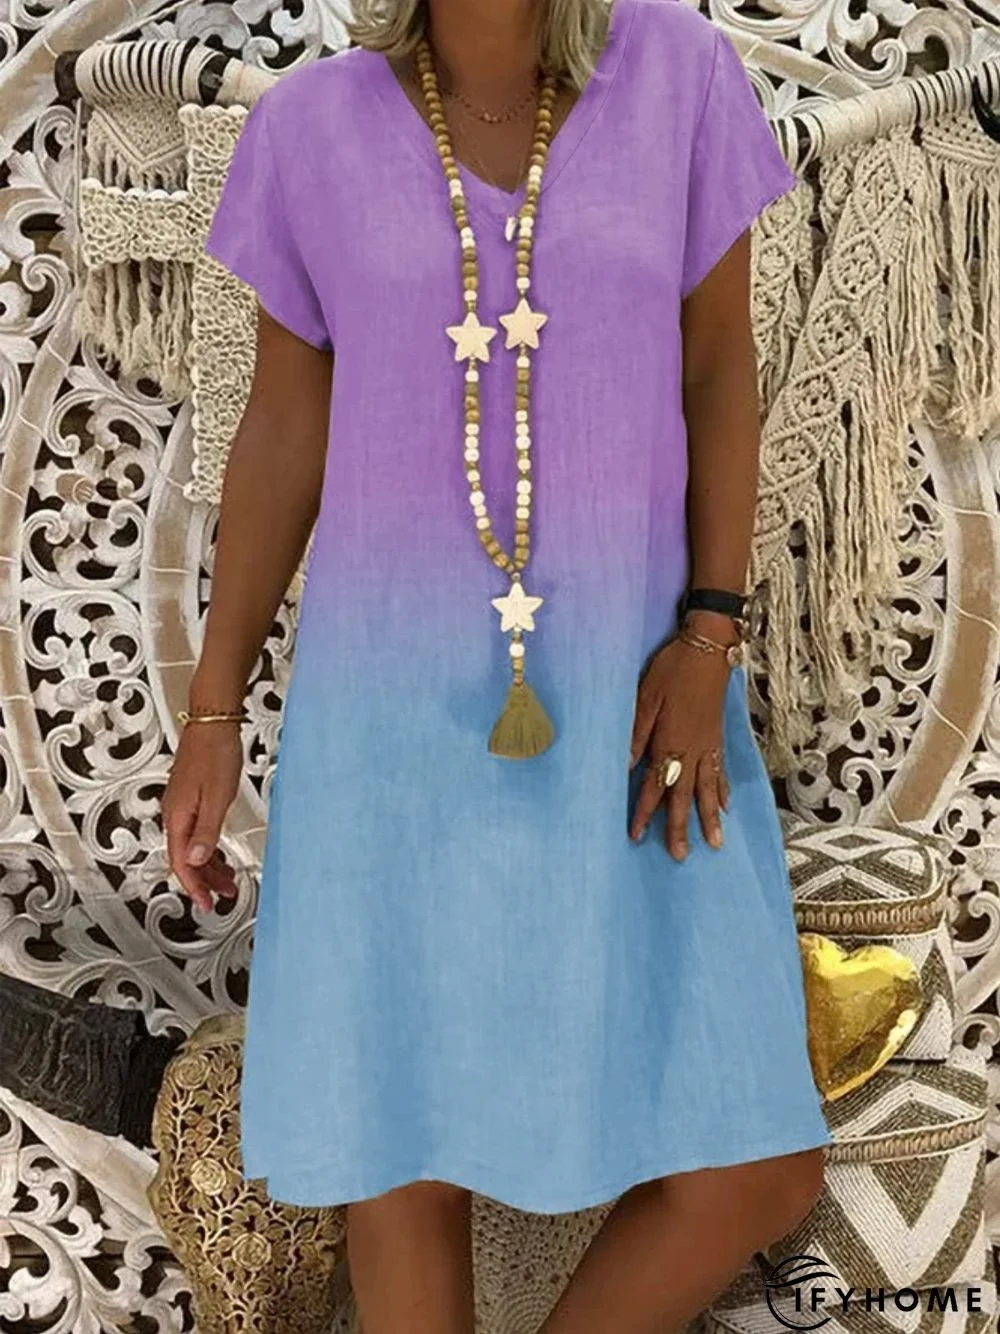 zolucky Cotton-Blend V Neck Casual Knitting Dress | IFYHOME